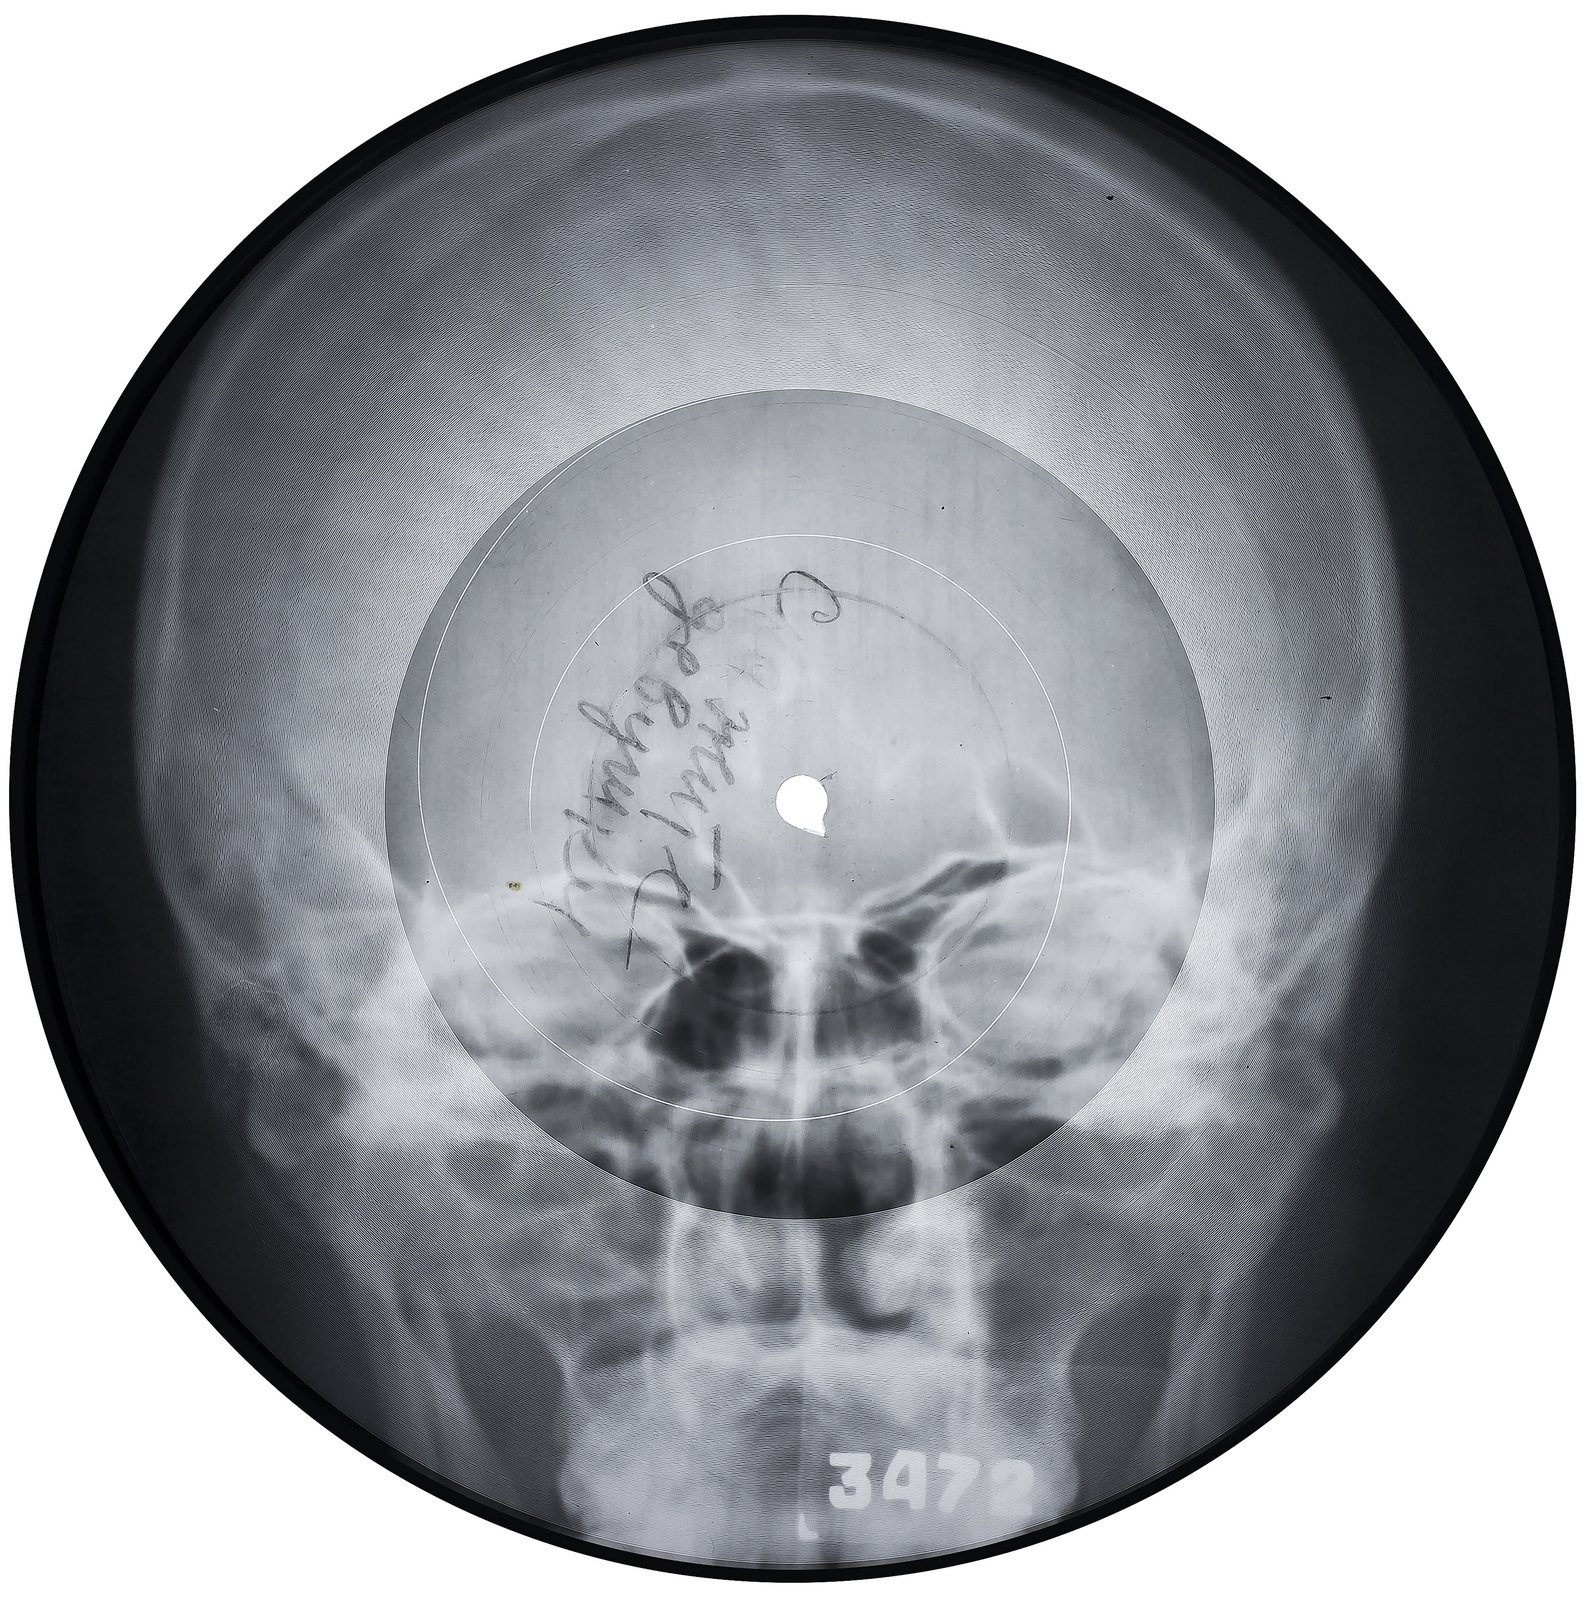 Неизвестный исполнитель, &laquo;Скажите девушки&raquo;. Конец 1950-х &mdash; начало 1960-хАудиозапись на рентгеновском снимке. Диаметр 22 смСобрание X-Ray Audio, Лондон